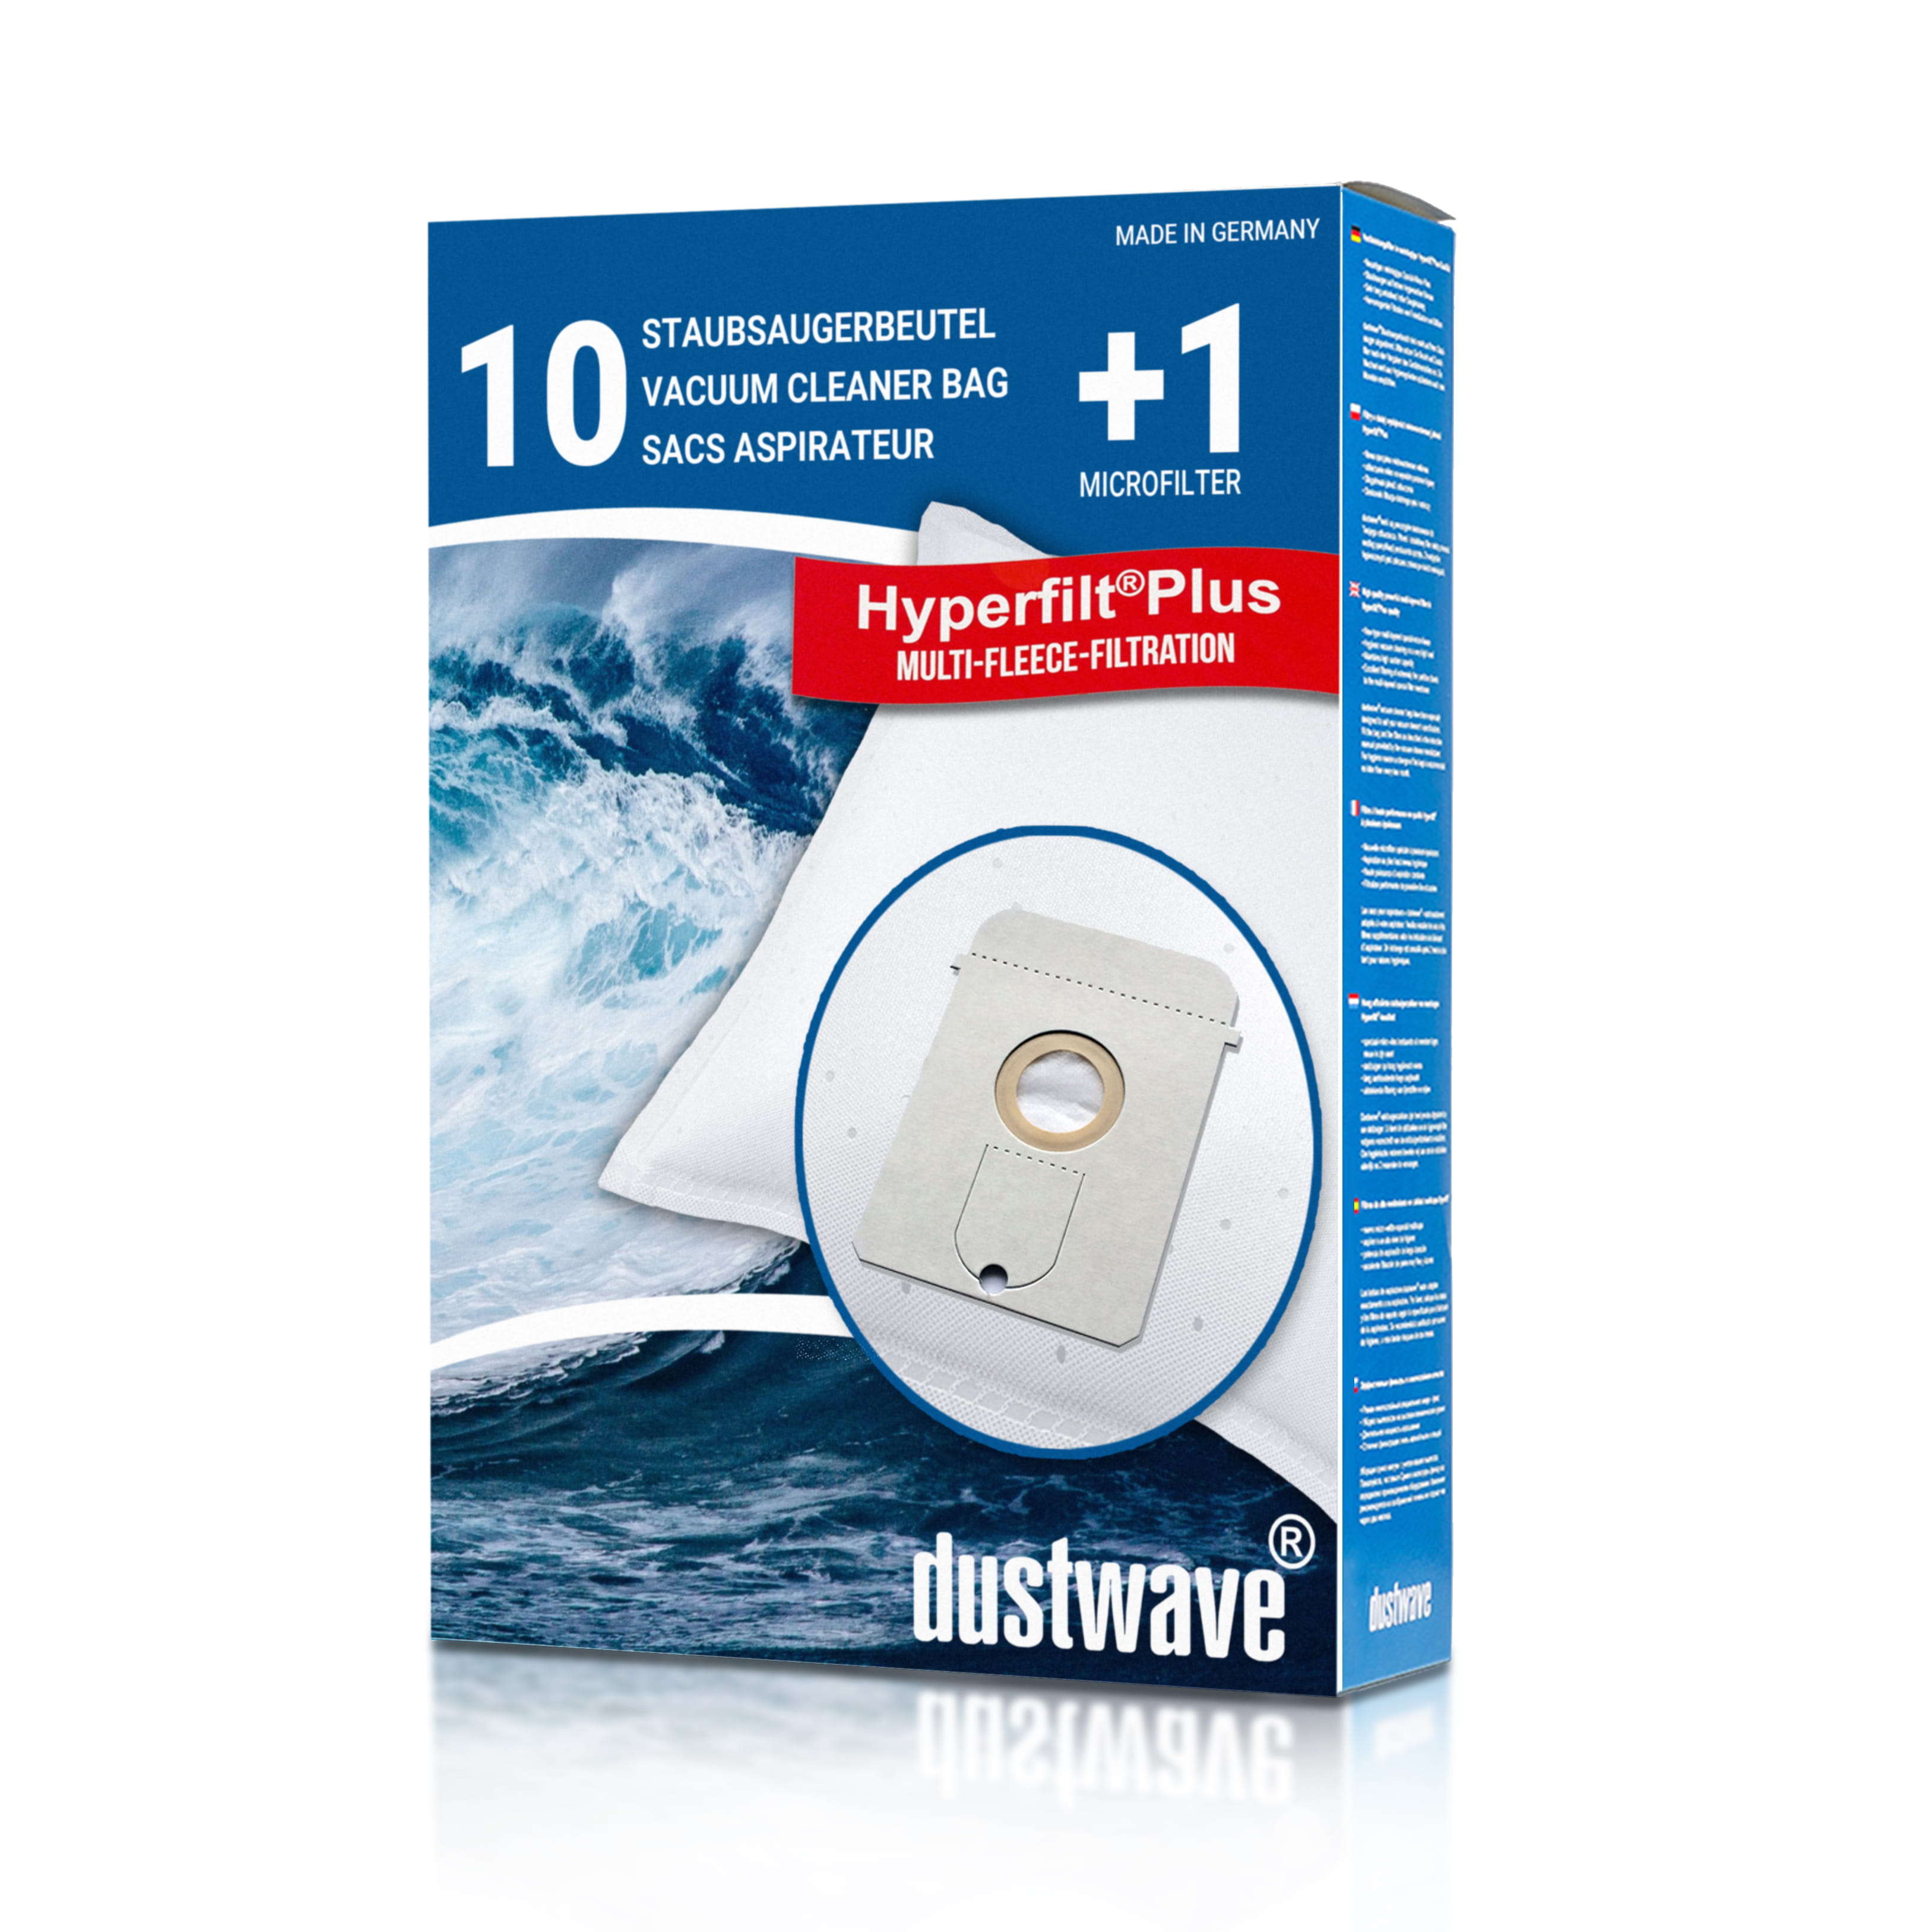 Dustwave® 10 Staubsaugerbeutel für AEG Vampyr 8208 Carat - hocheffizient, mehrlagiges Mikrovlies mit Hygieneverschluss - Made in Germany